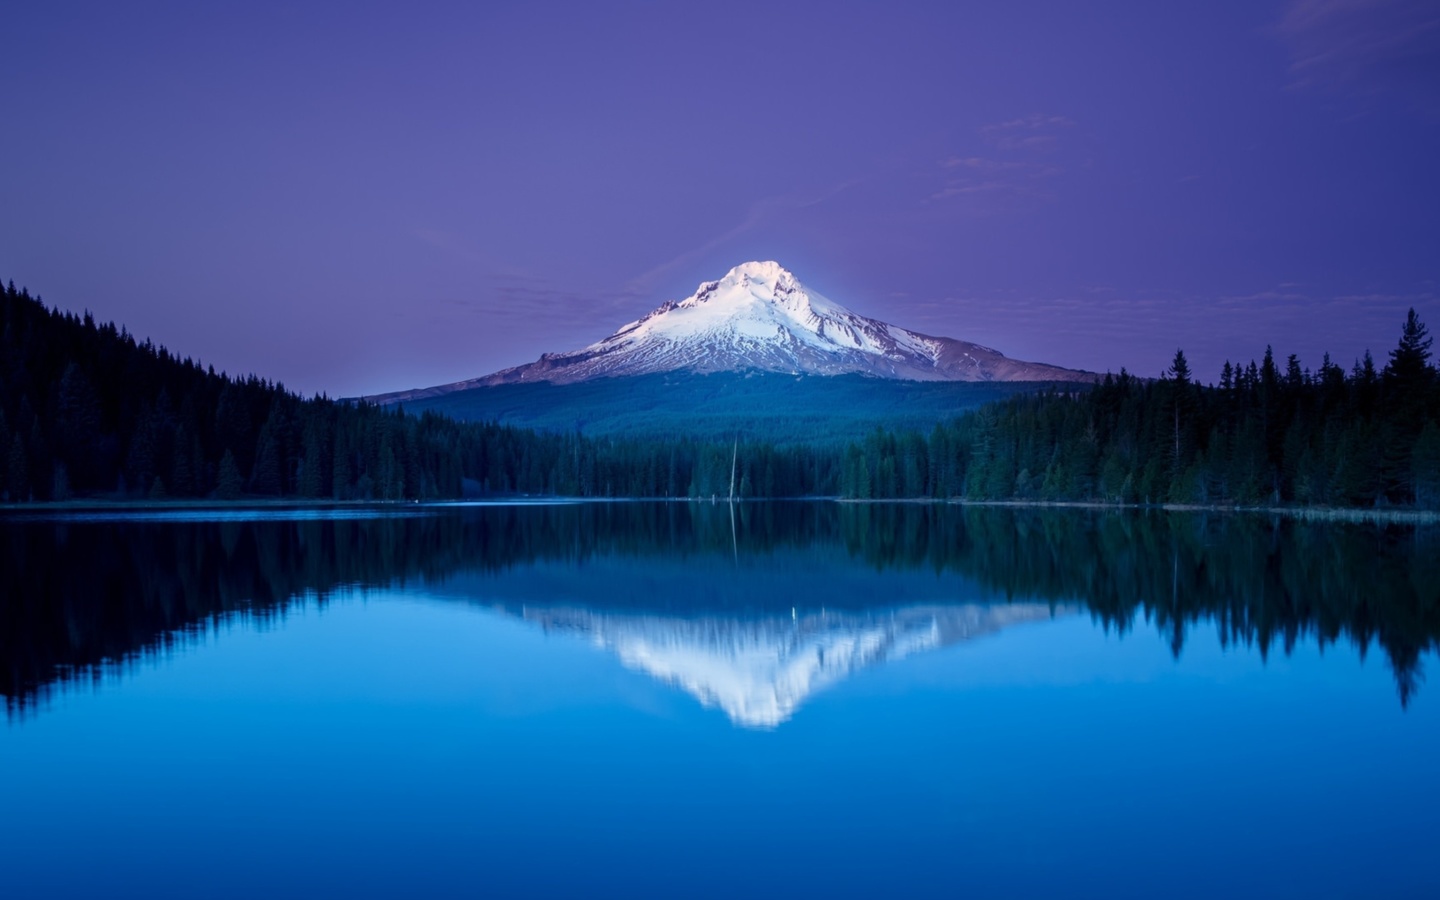 Обои Mountains with lake reflection 1440x900